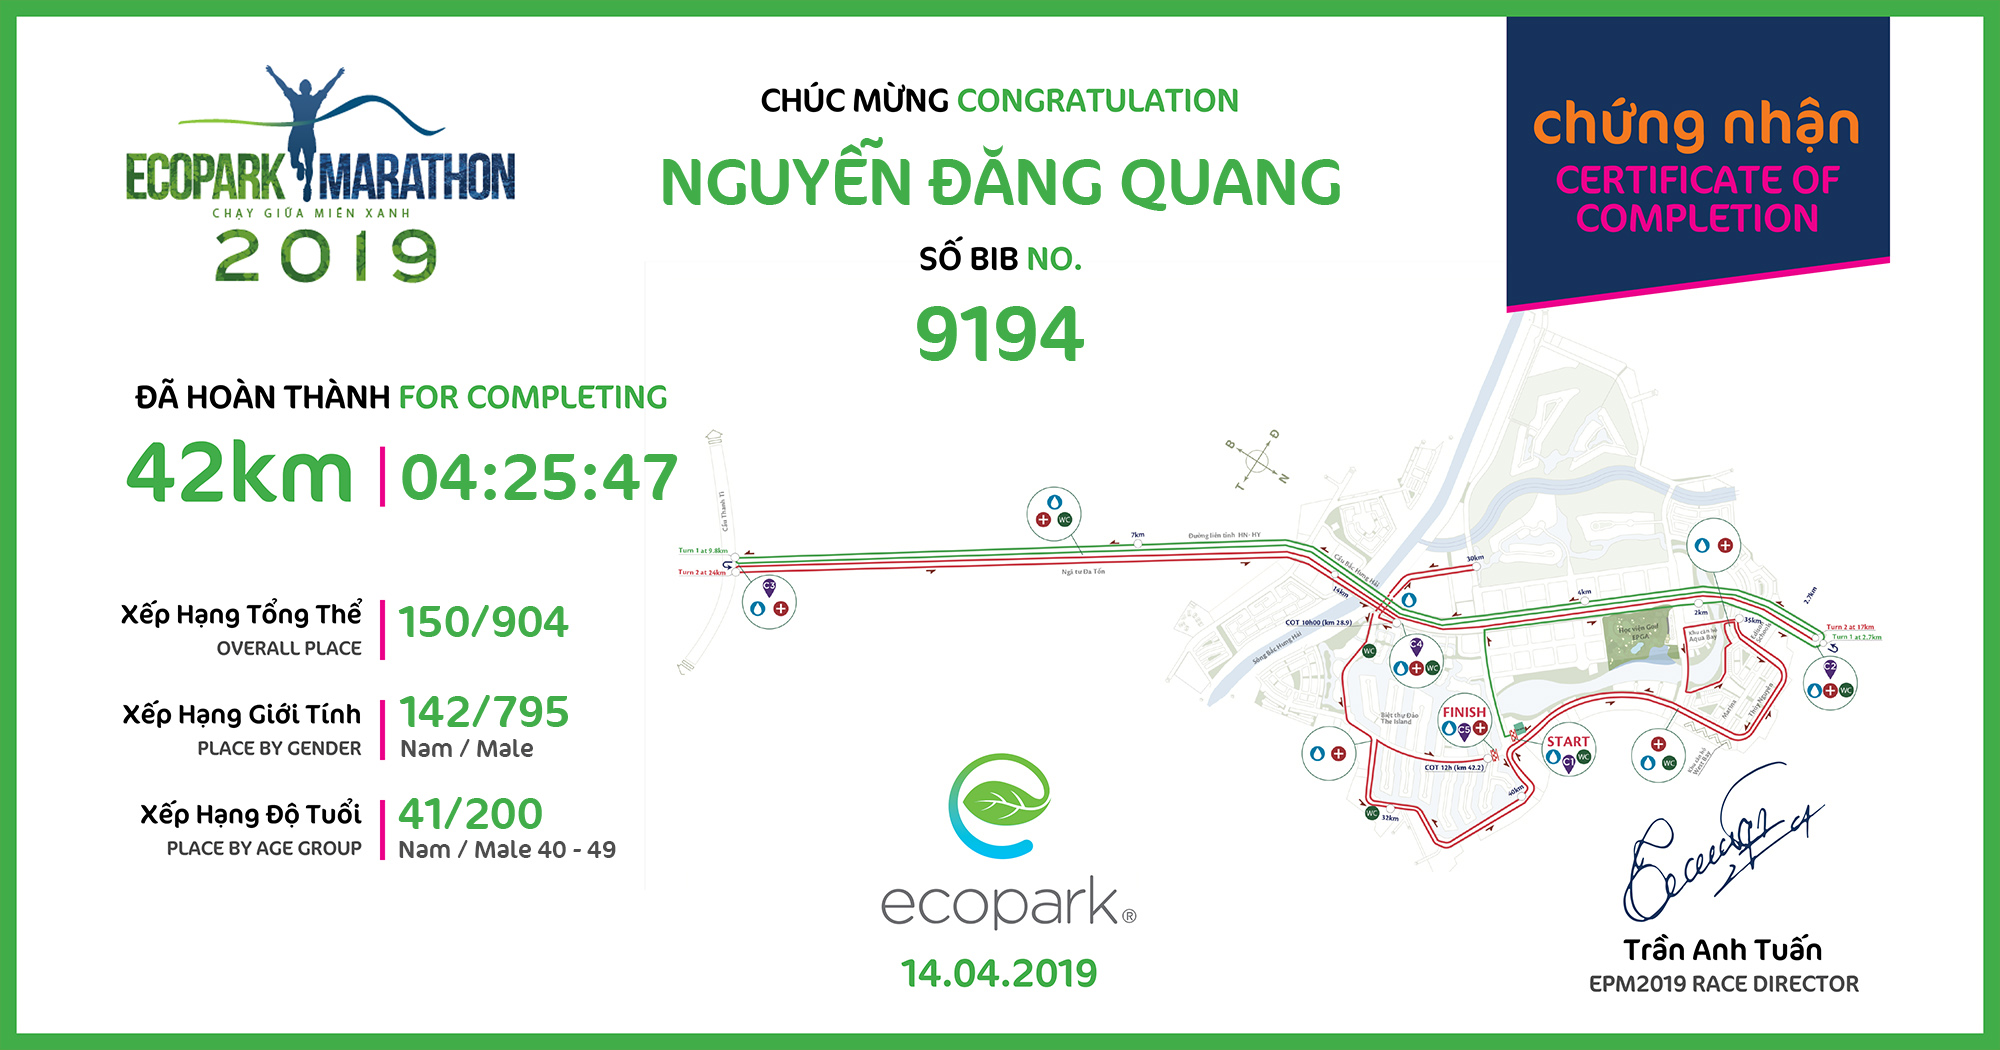 9194 - Nguyễn Đăng Quang